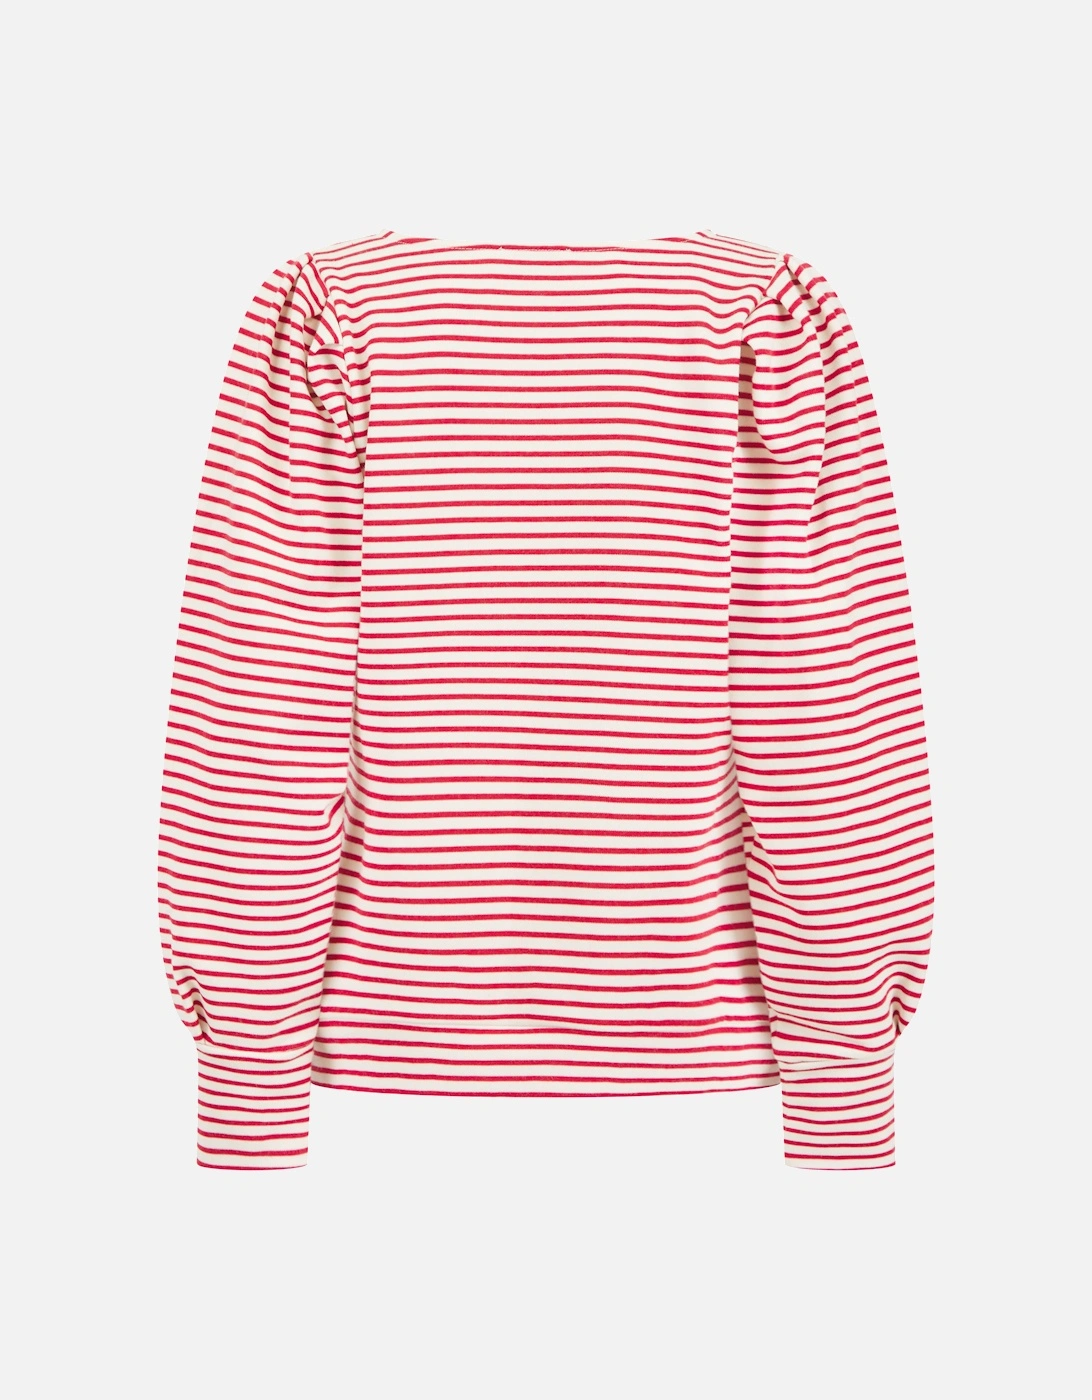 Helena Sweatshirt in Red Mix